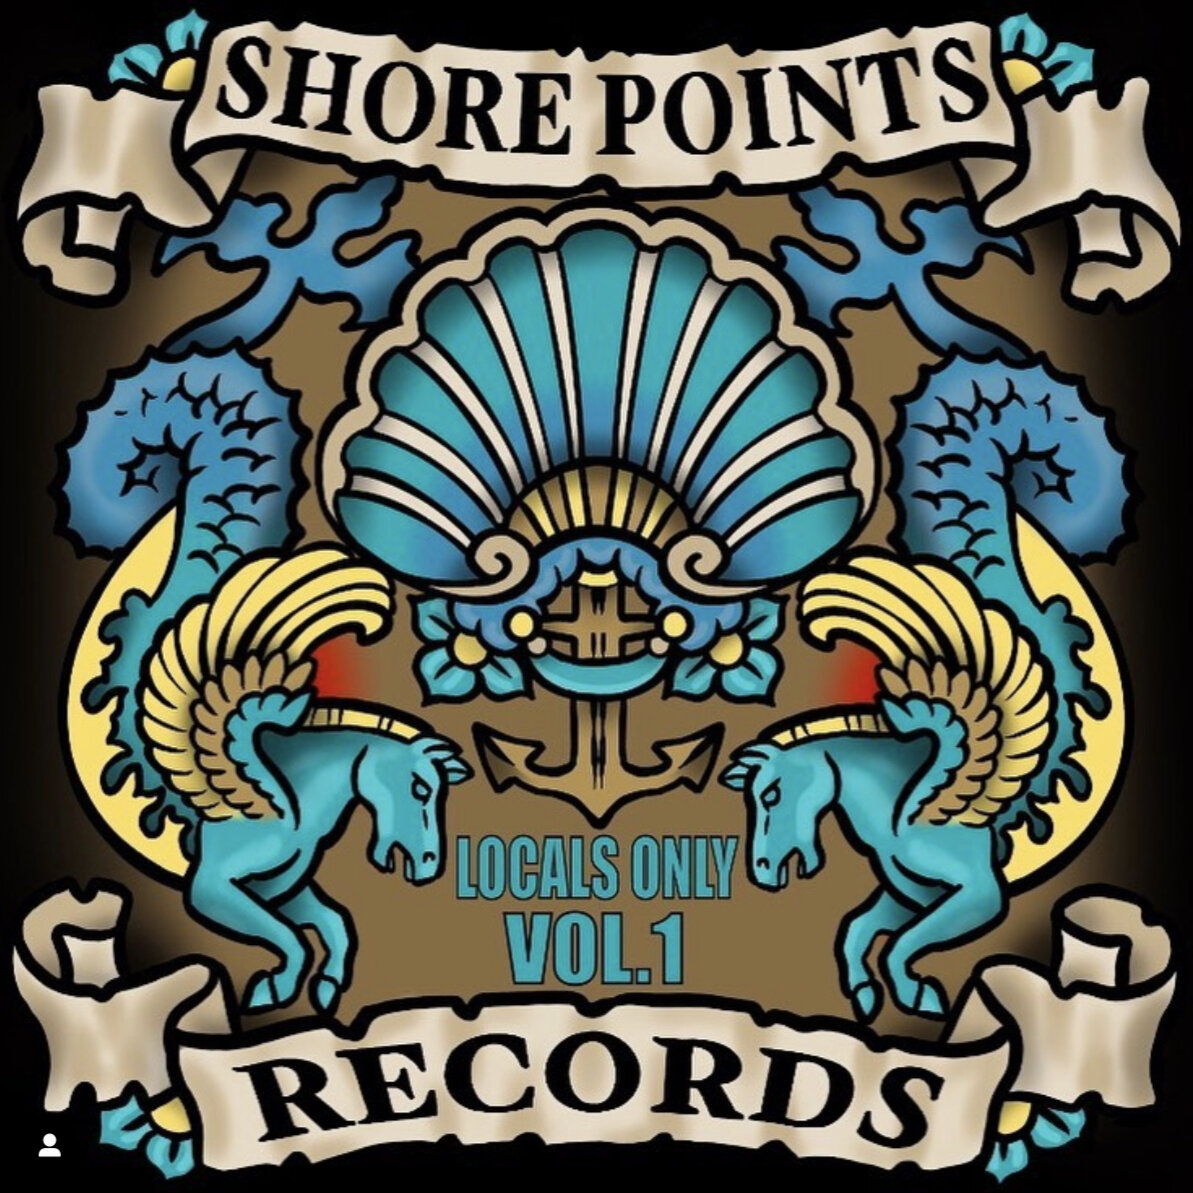 Short Points Records vol 1.jpg